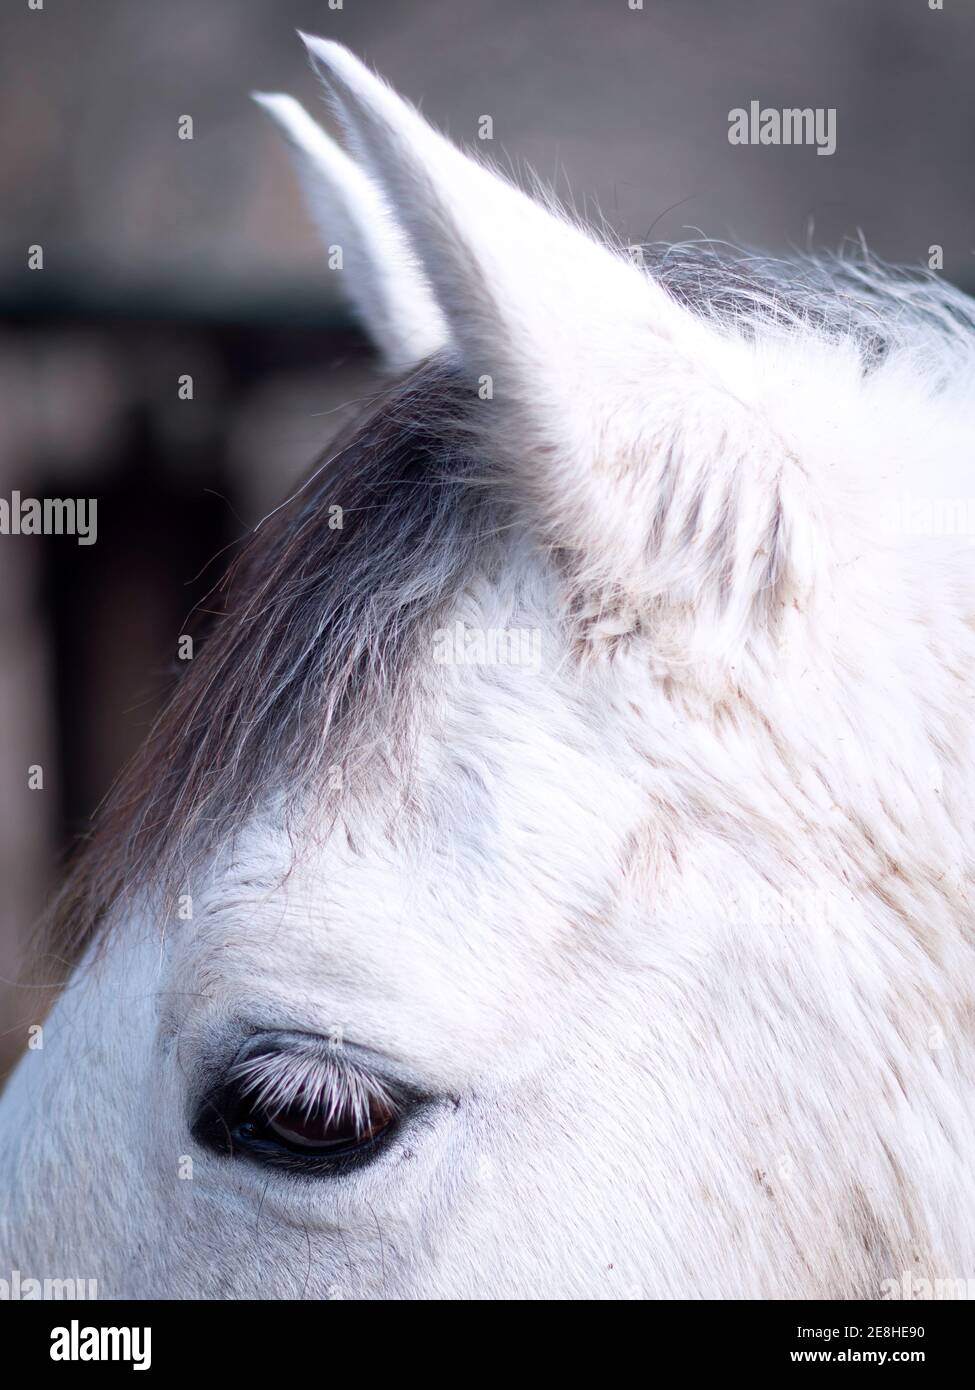 Gros plan vertical de l'œil d'un cheval gris andalou. Banque D'Images